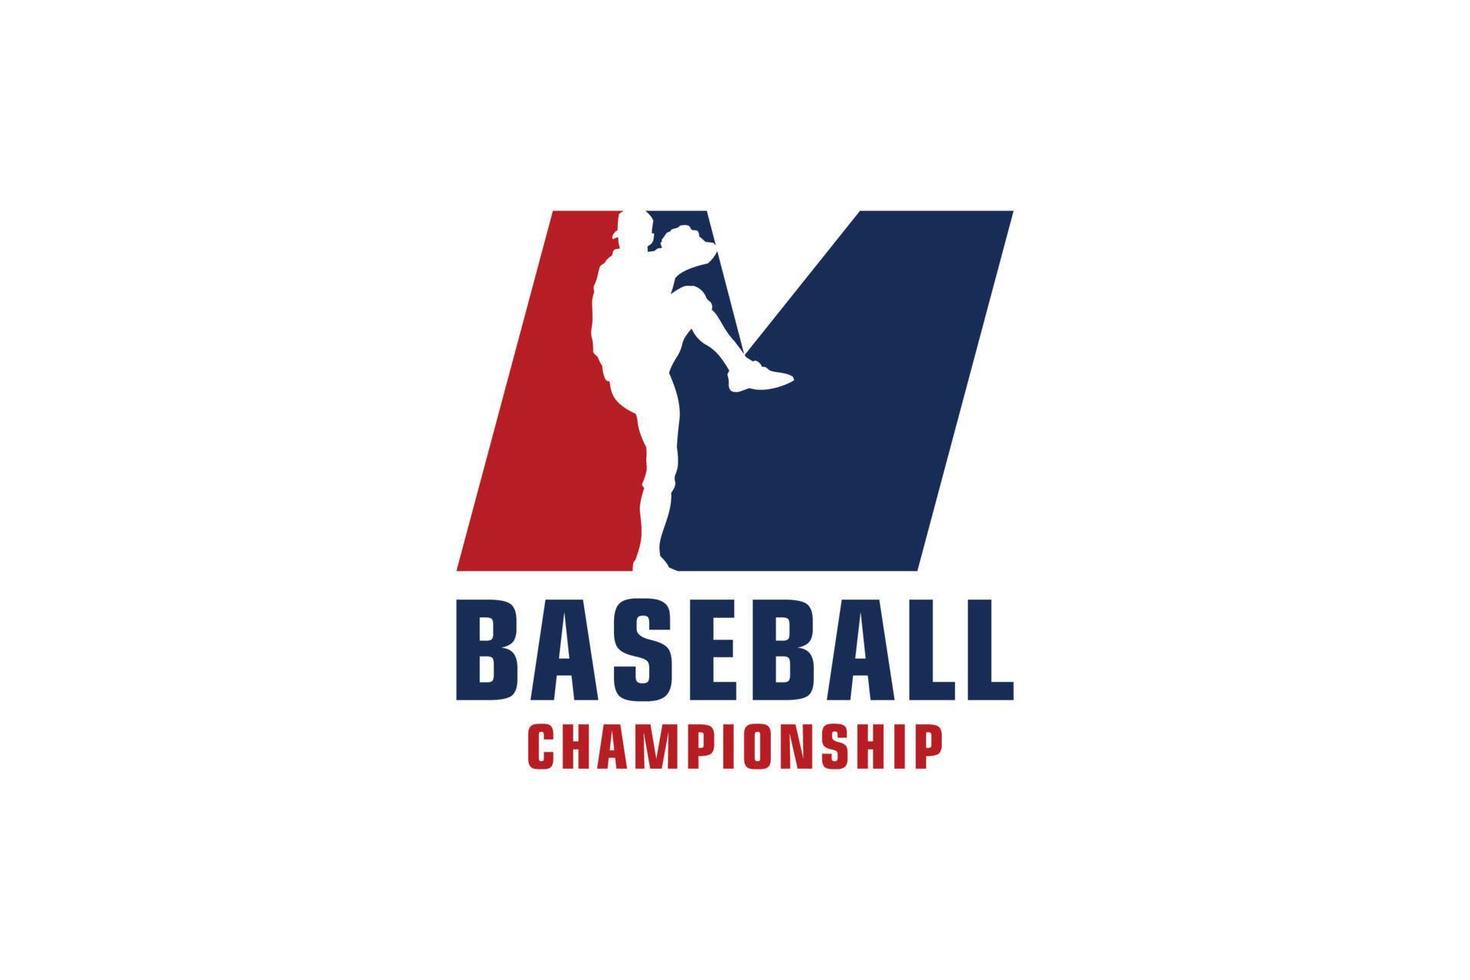 bokstaven m med baseball logotyp design. vektor designmallelement för sportlag eller företagsidentitet.